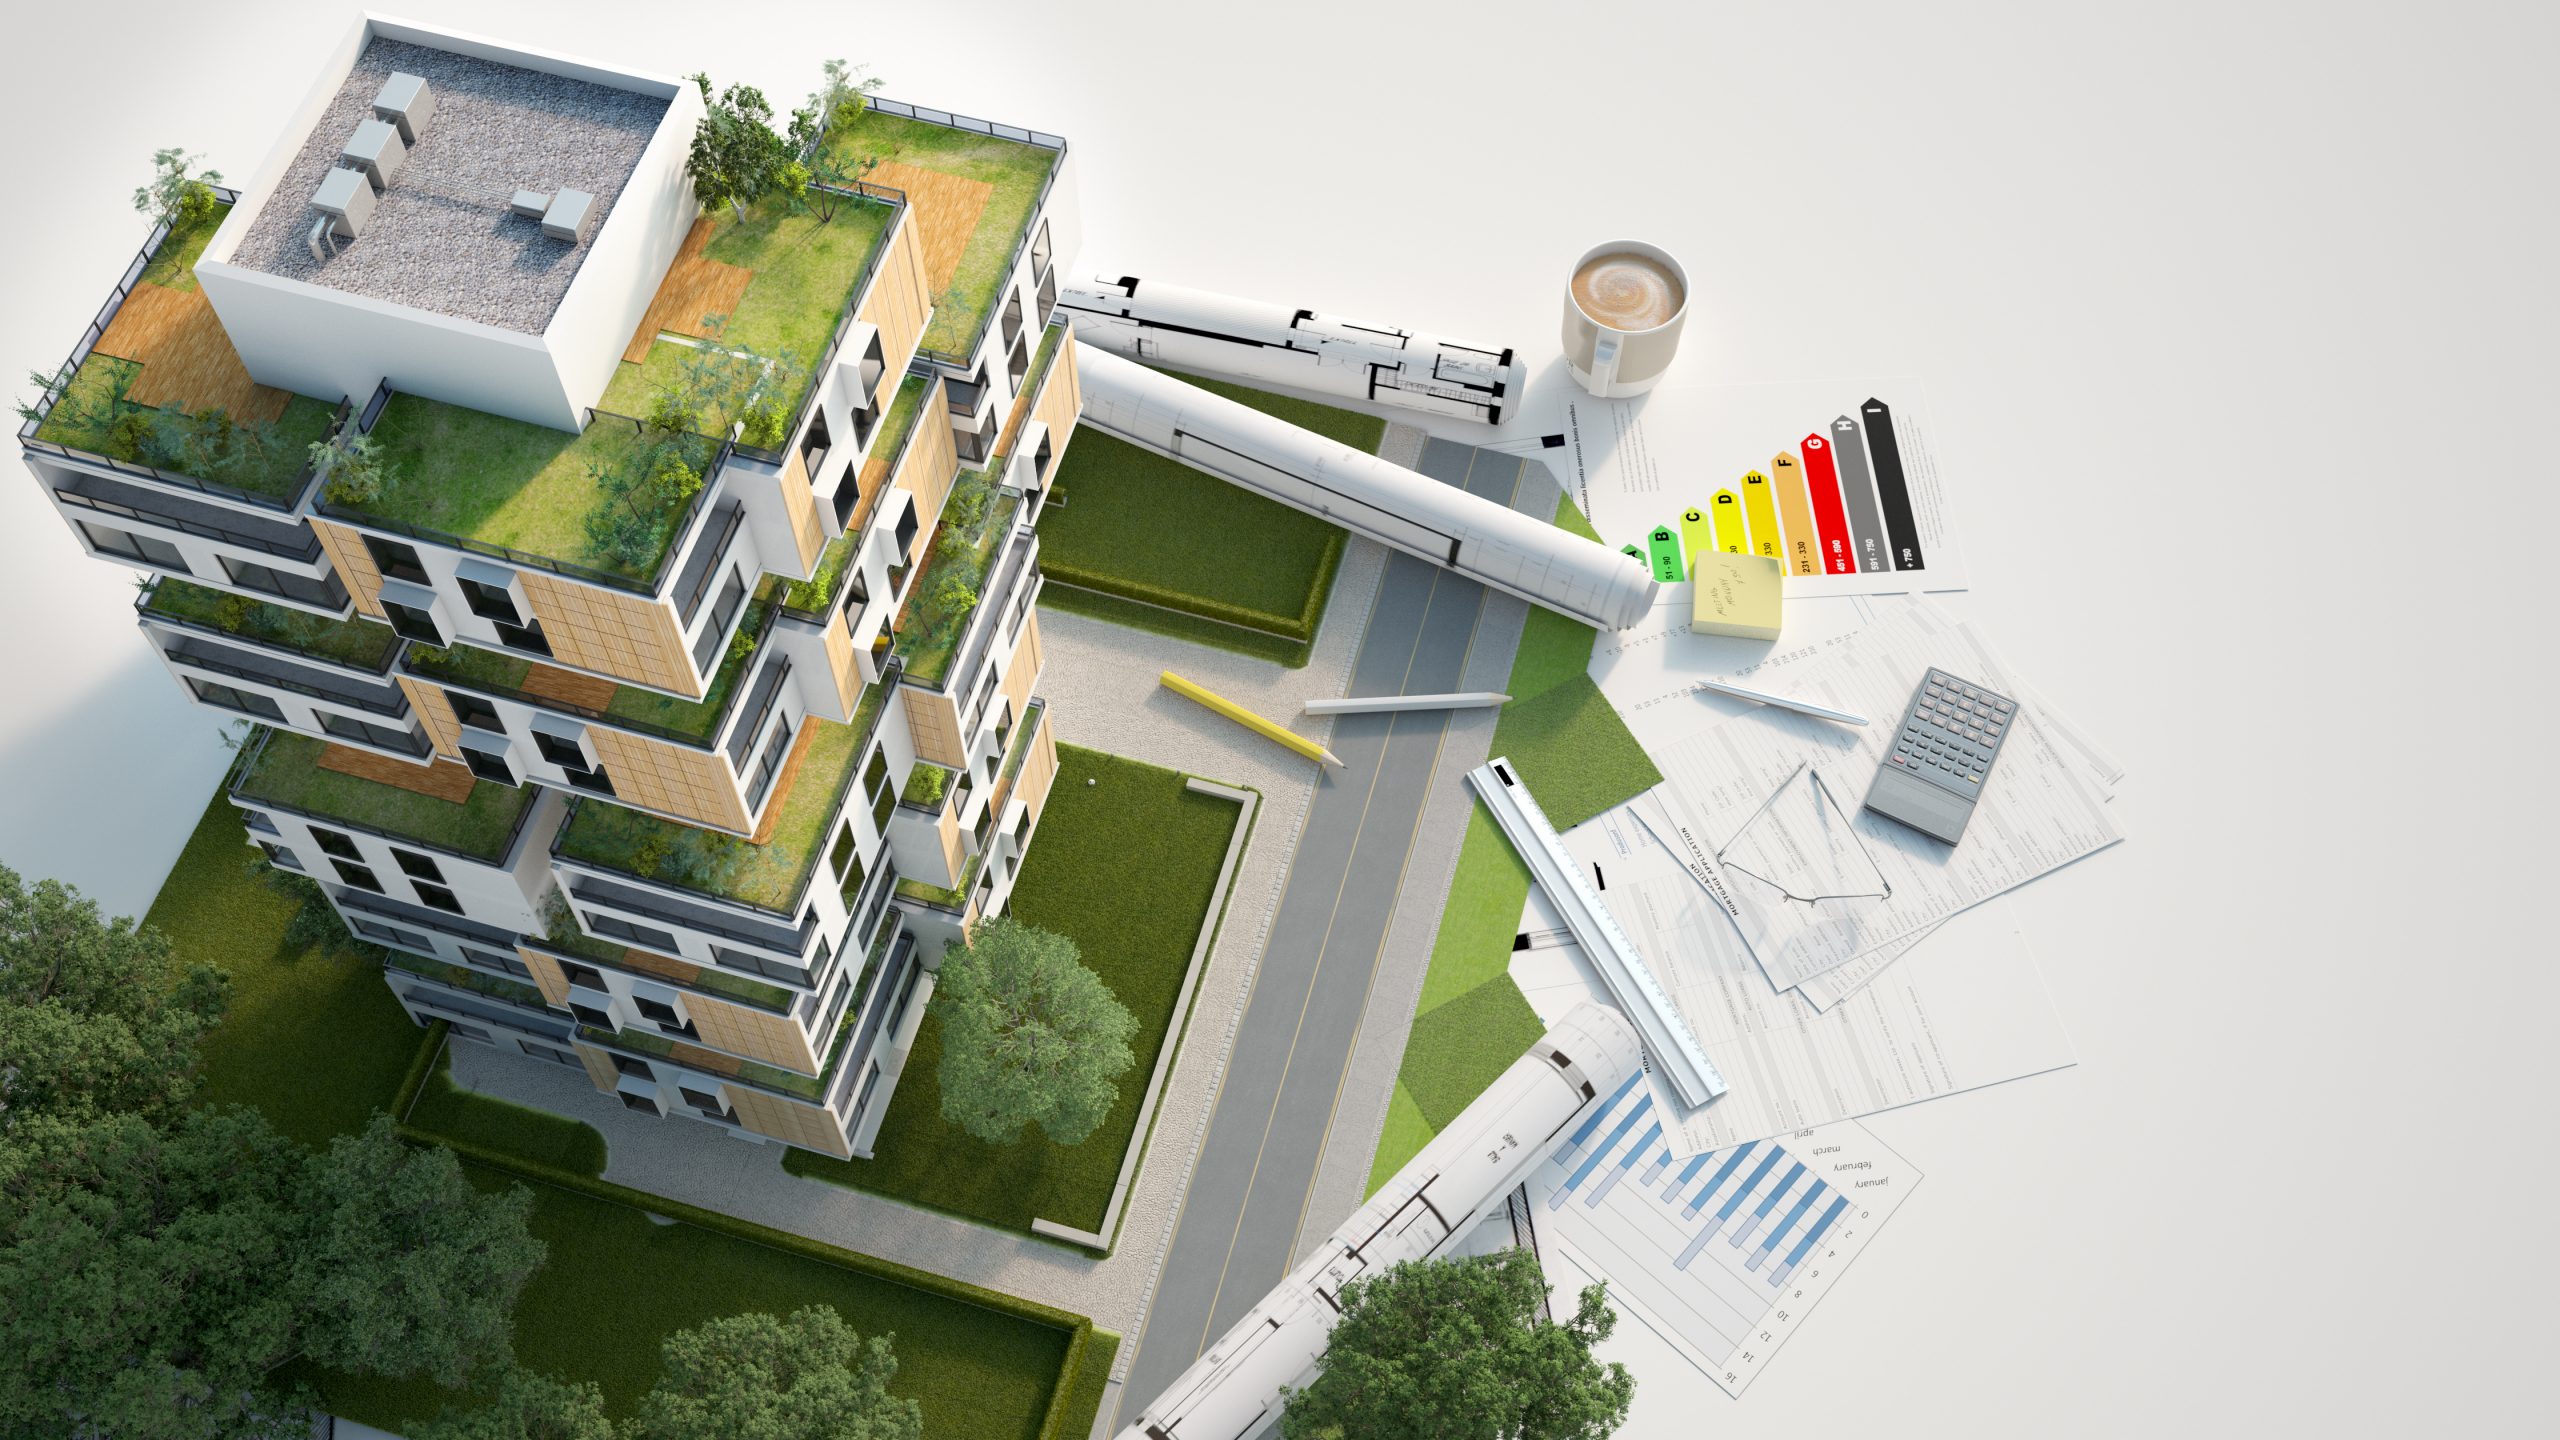 Construção civil: conheça a arquitetura bioclimática